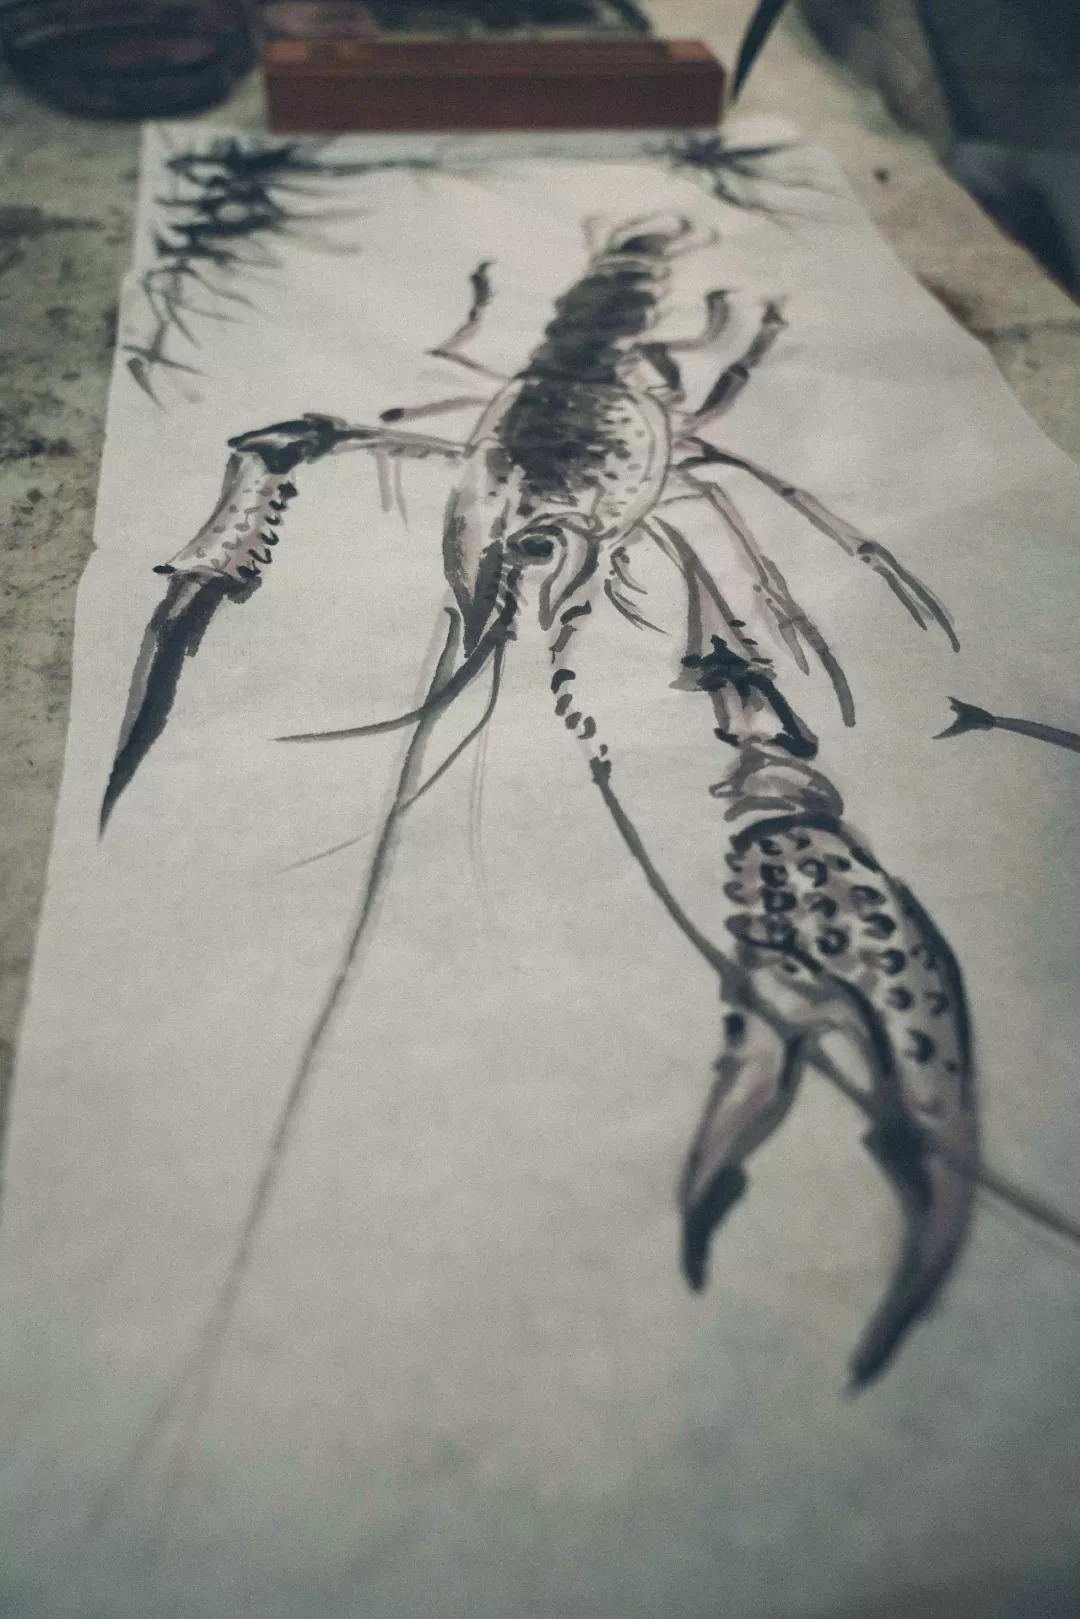 龙虾工笔画图片